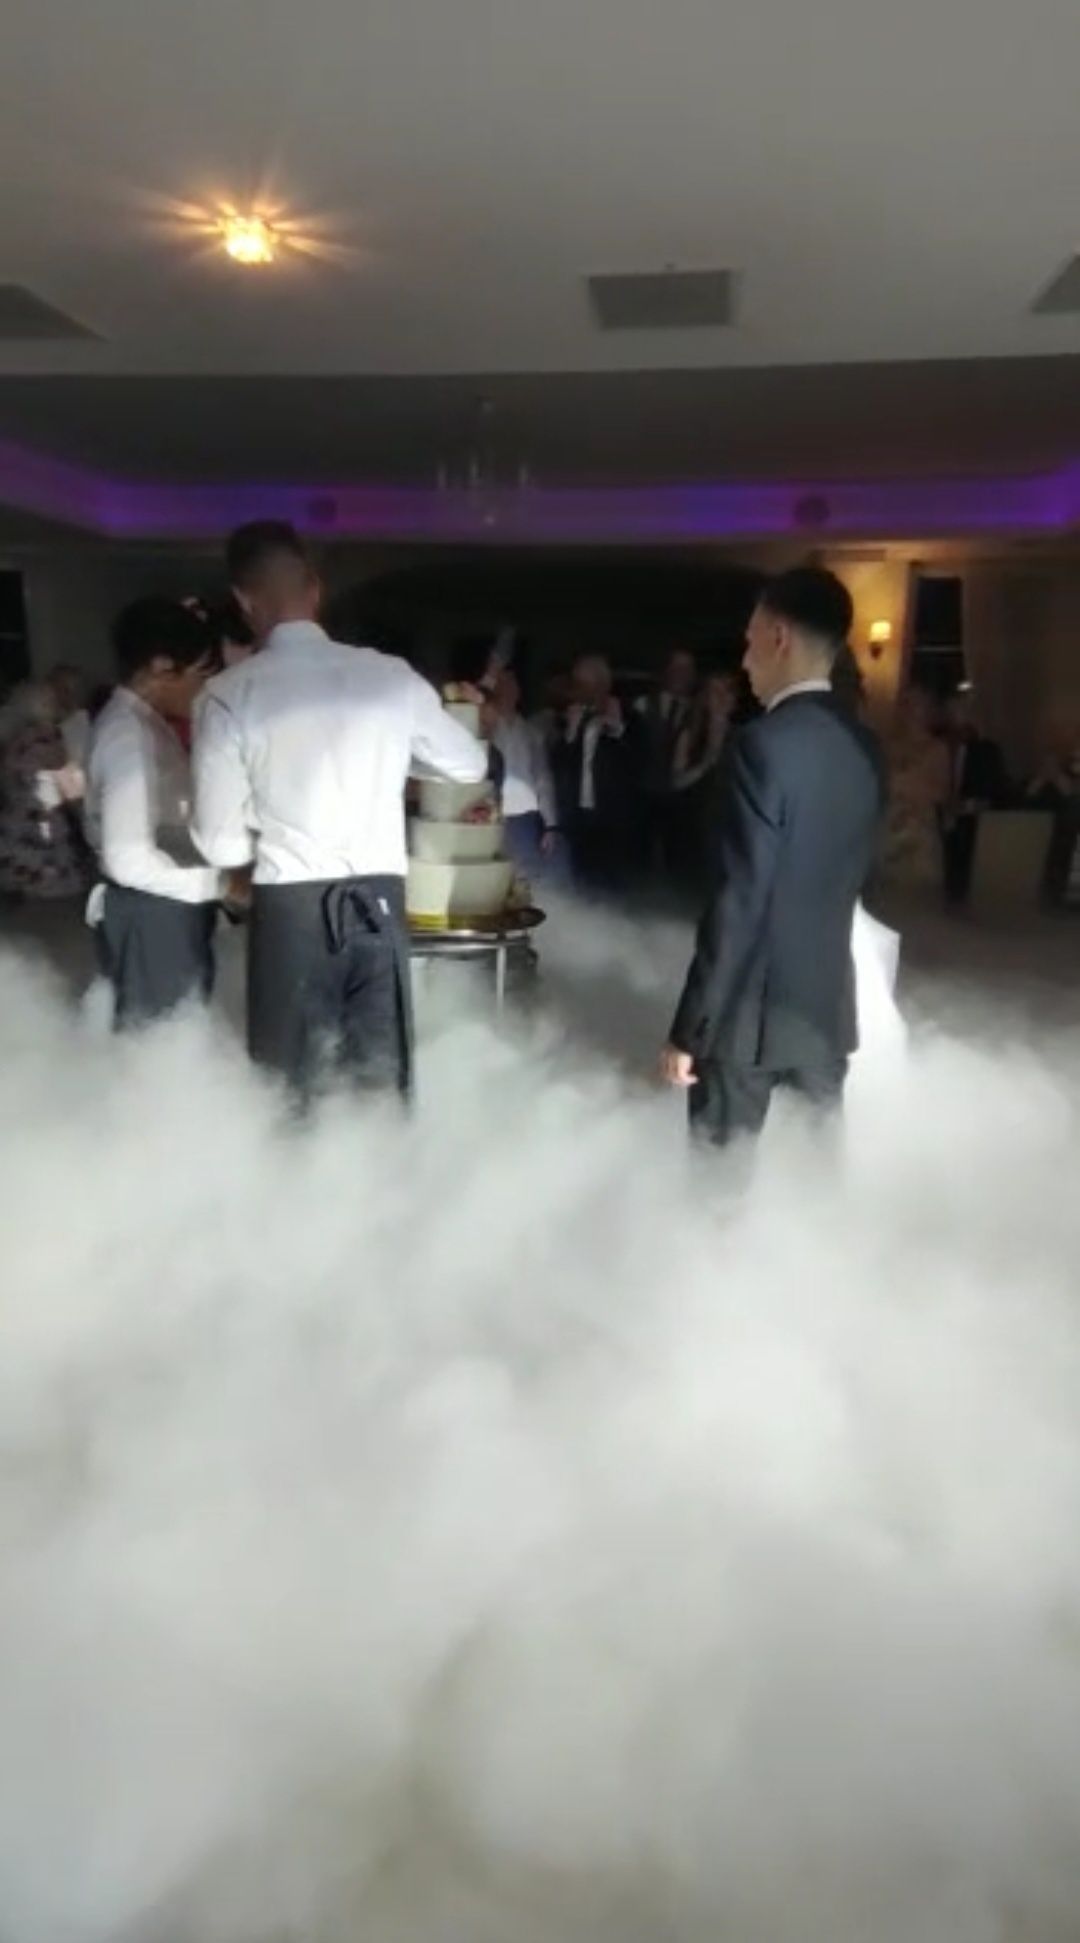 Ciężki dym pierwszy taniec, taniec w chmurach